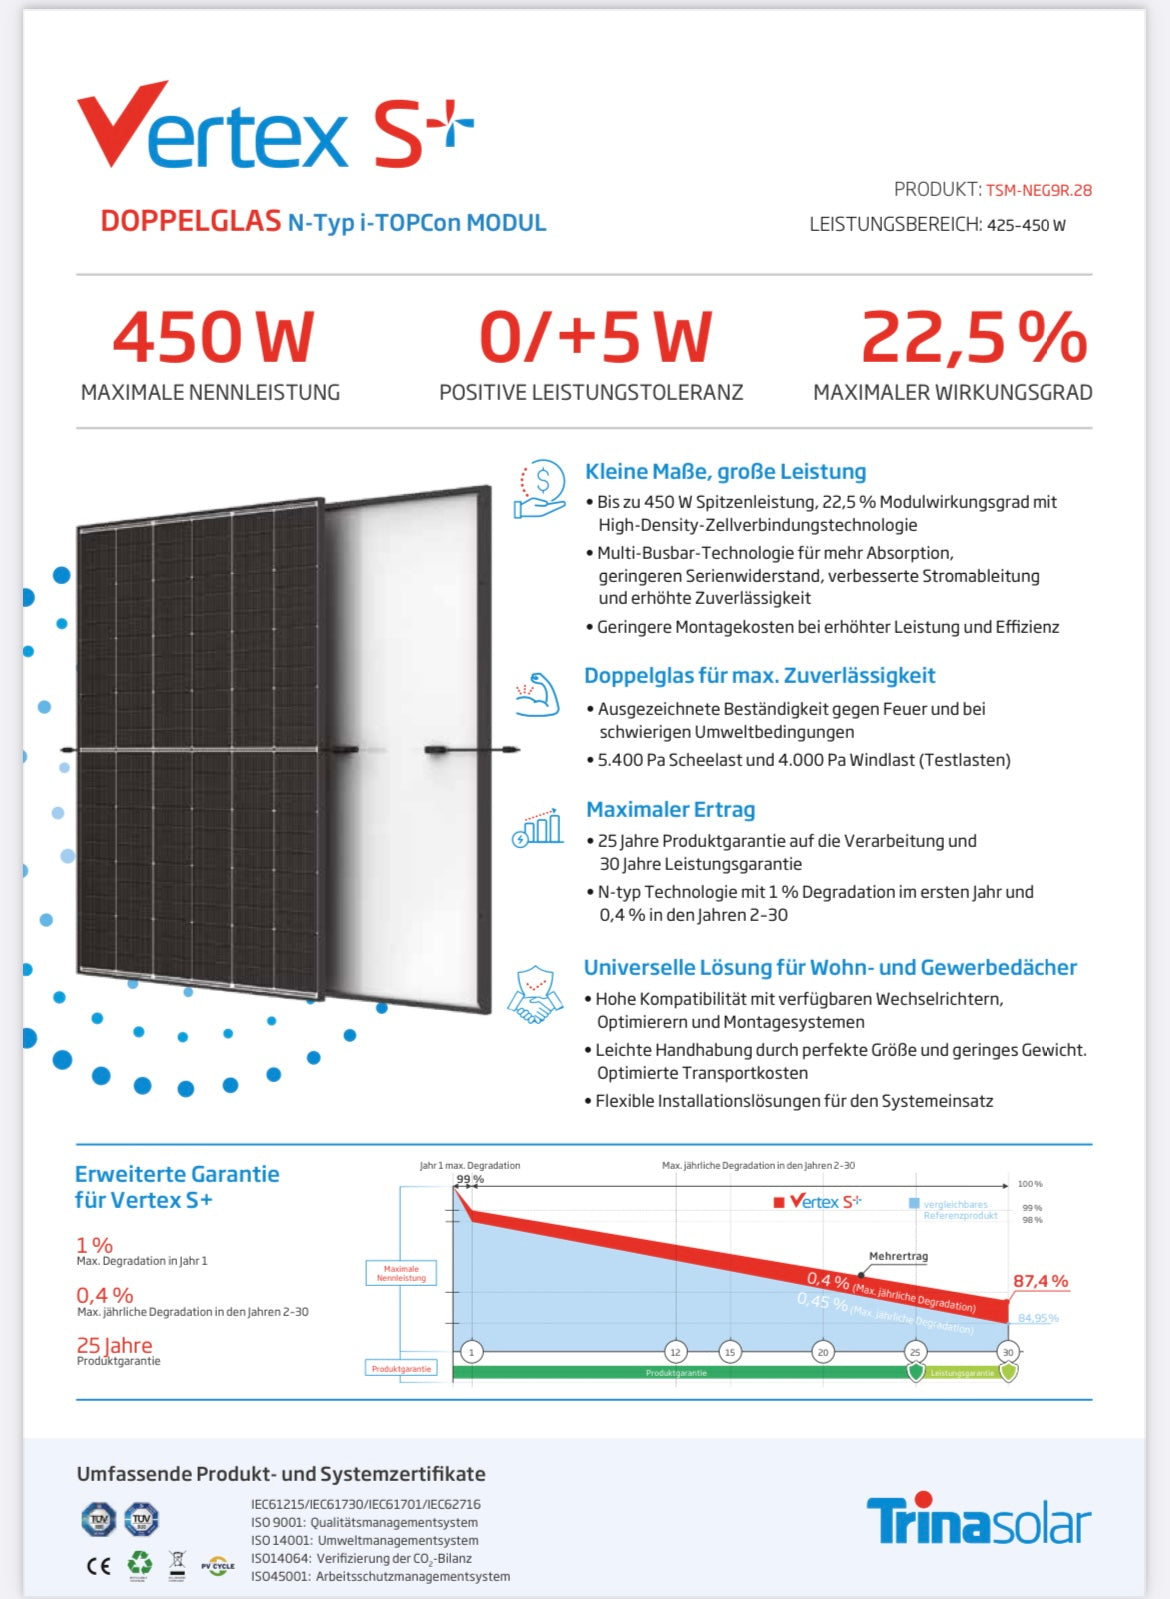 Komplettlösung "FD" 3 KWp inkl. Speicher ## Solarmodule, Wechselrichter, 5 kWh Speicher + UK für Flachdach ##